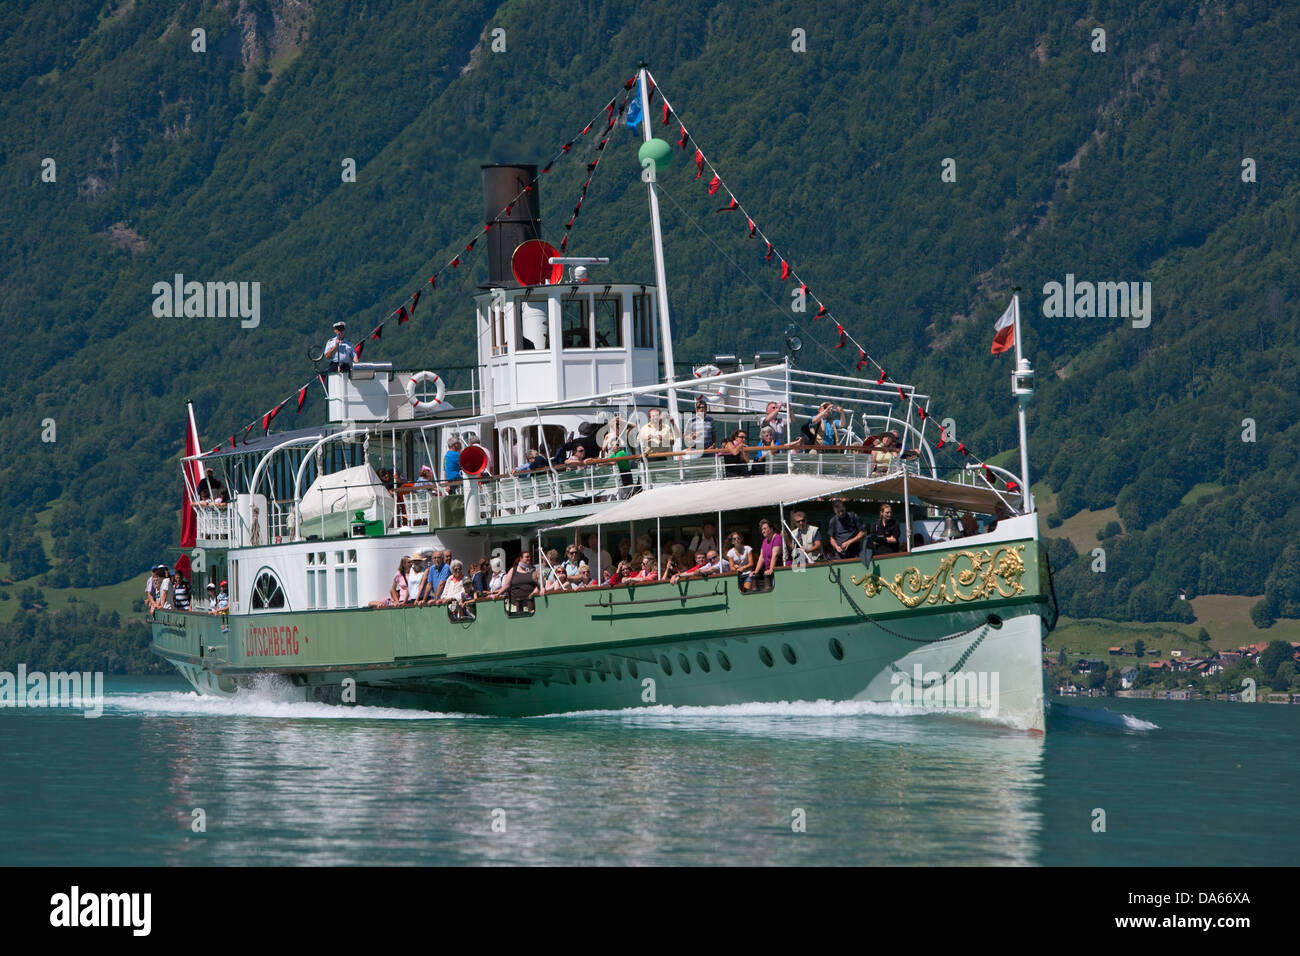 Steamboat, battello a vapore, Lötschberg Brienzersee, nave, barca, navi, barche, il cantone di Berna Oberland bernese, il lago di Brienz, Svizzera Foto Stock